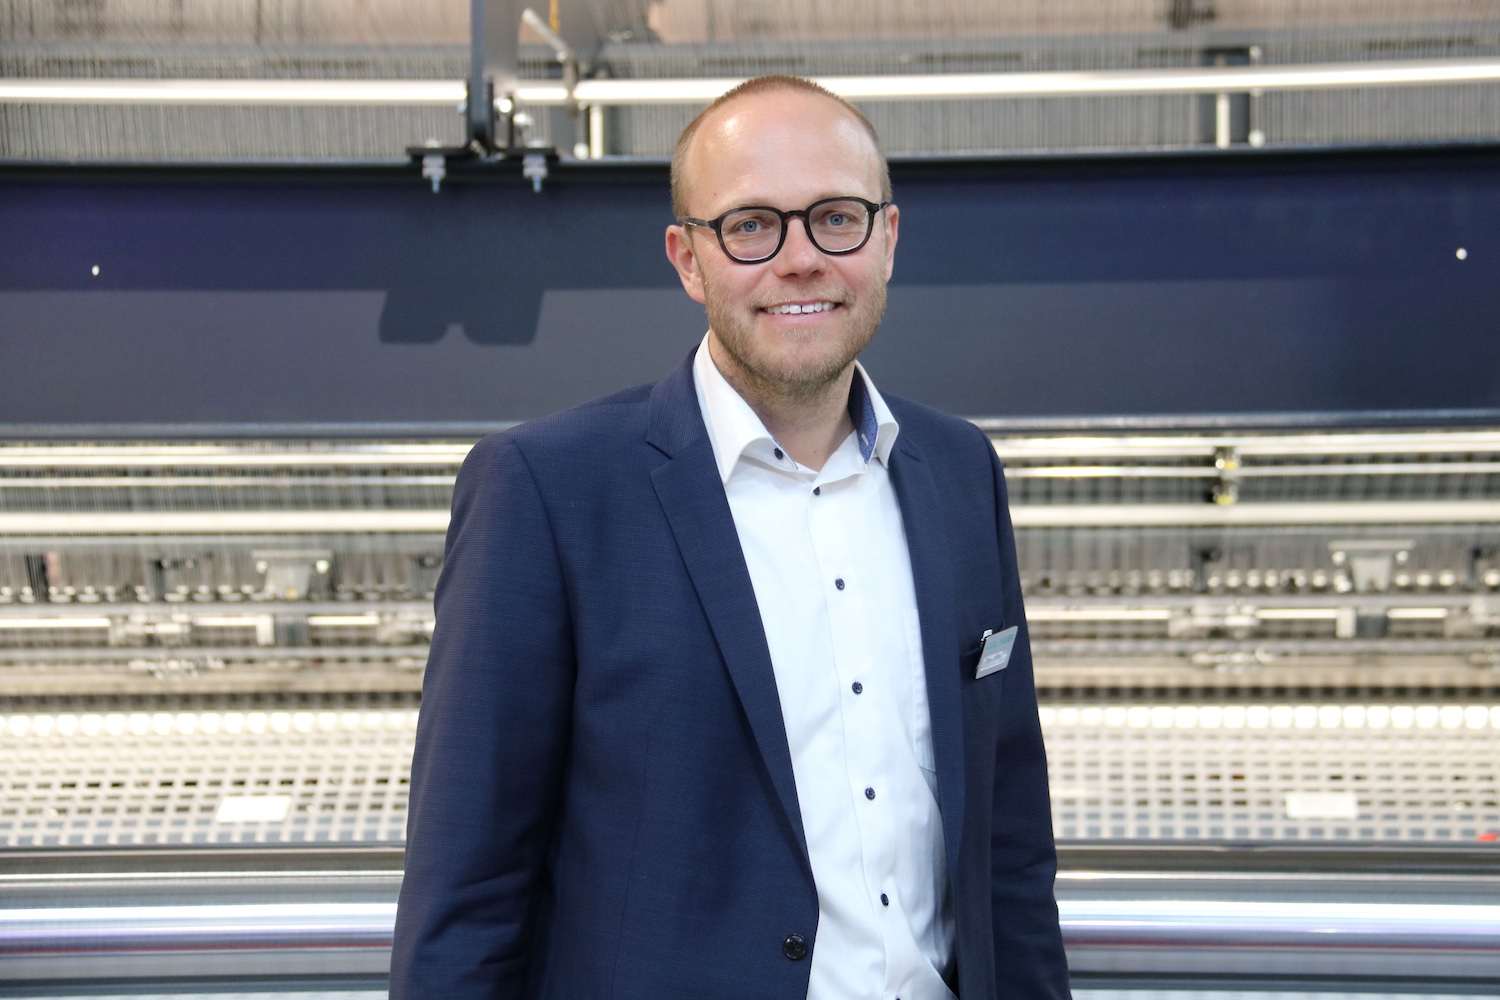 Hagen Lotzmann, Vice President Sales, Karl Mayer Technische Textilien. © Karl Mayer Group